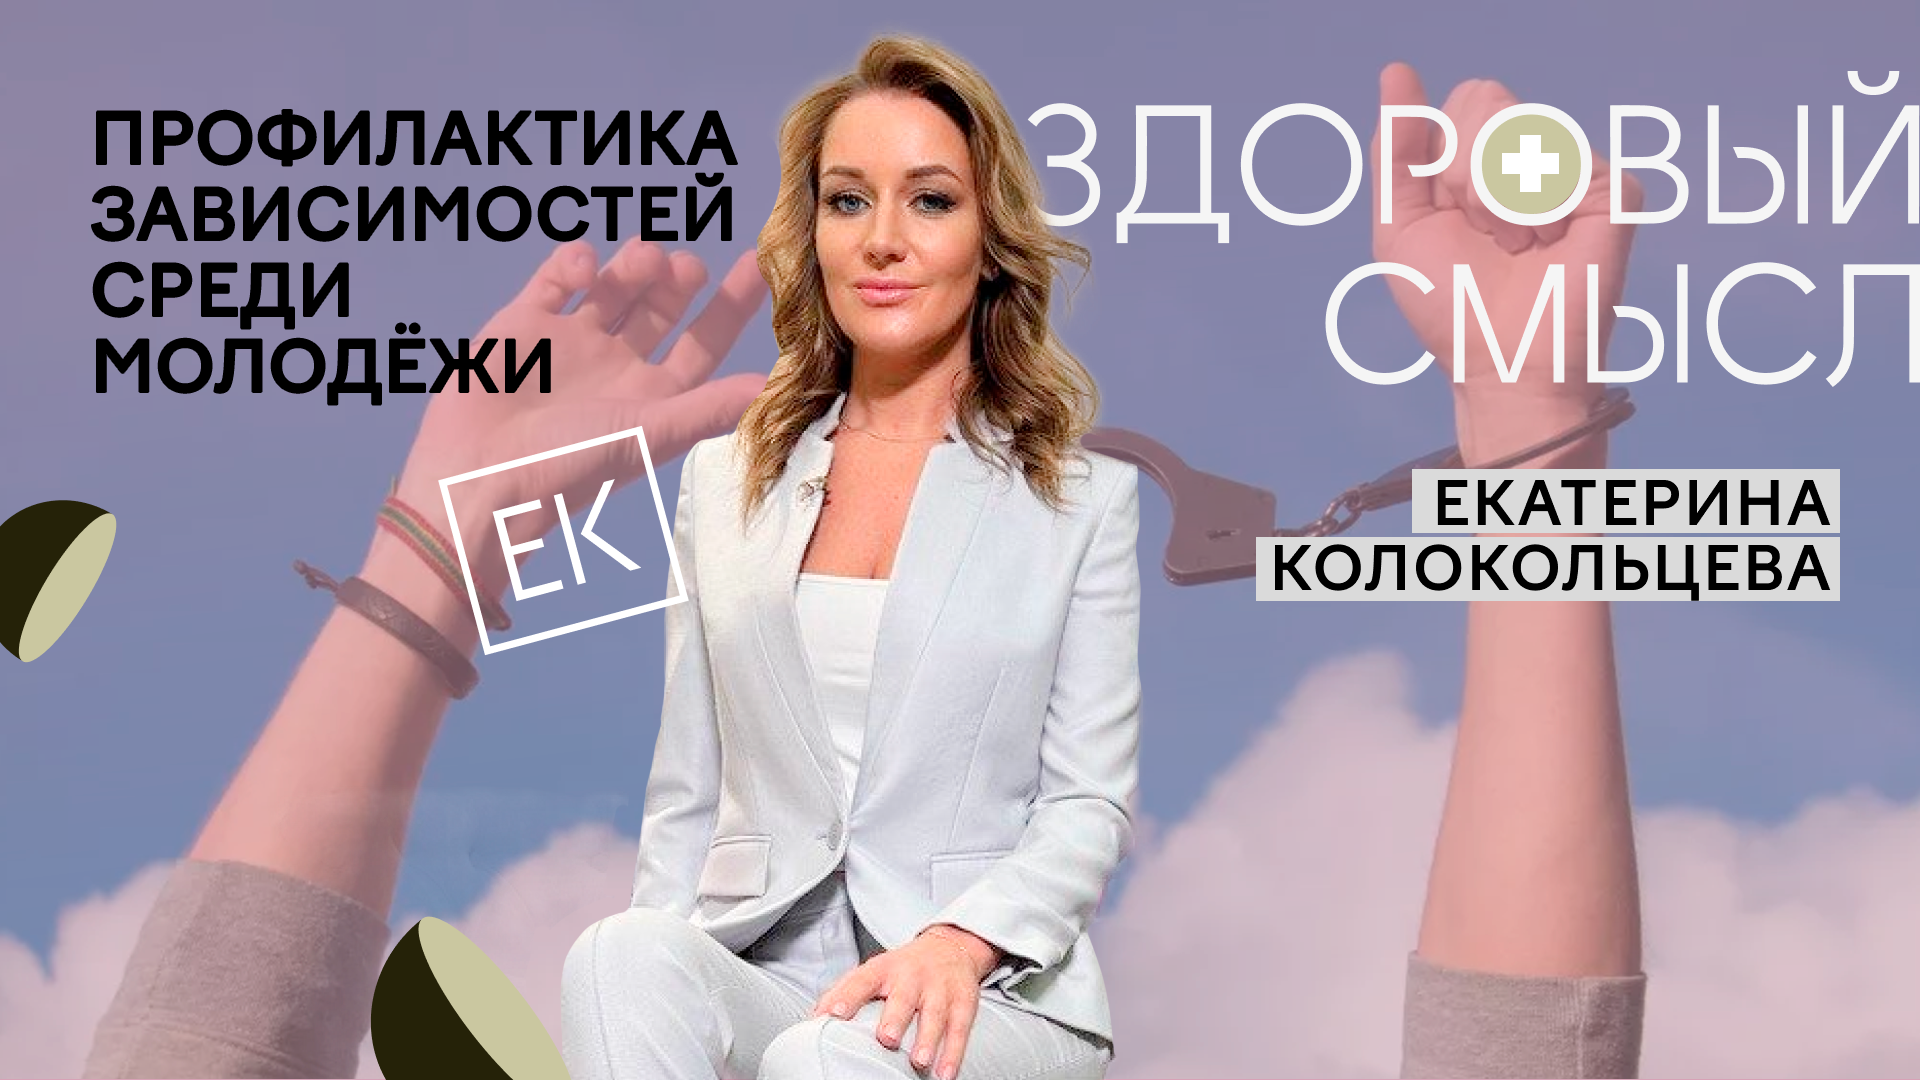 Профилактика употребления алкоголя и наркотиков среди молодёжи / Екатерина Колокольцева